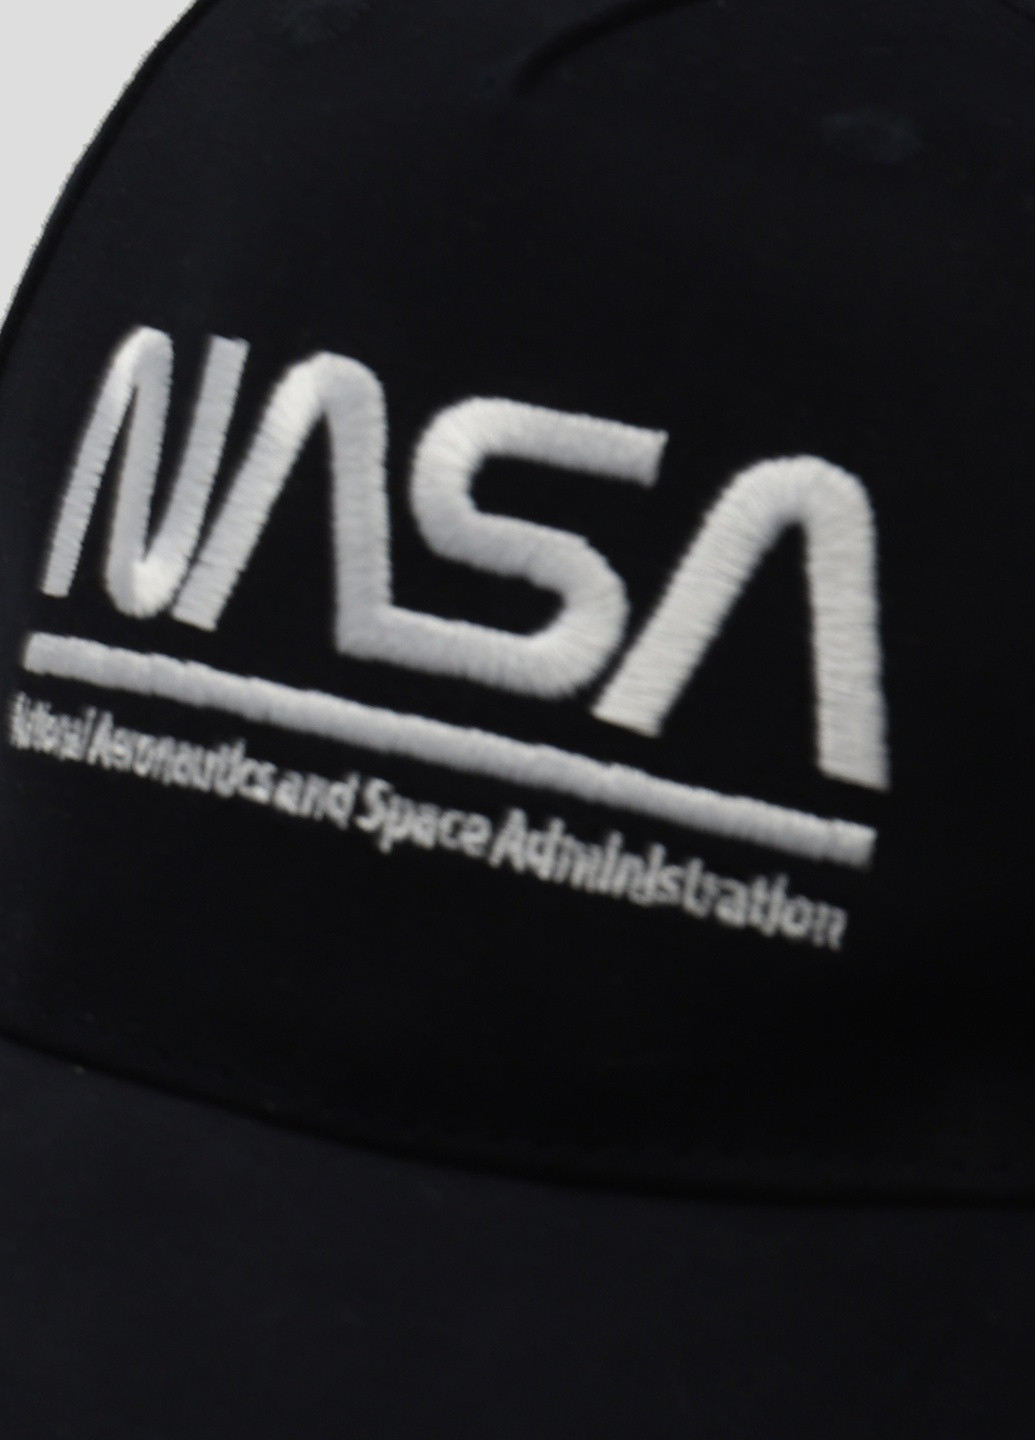 Белая кепка с вышитым логотипом Nasa (251240667)